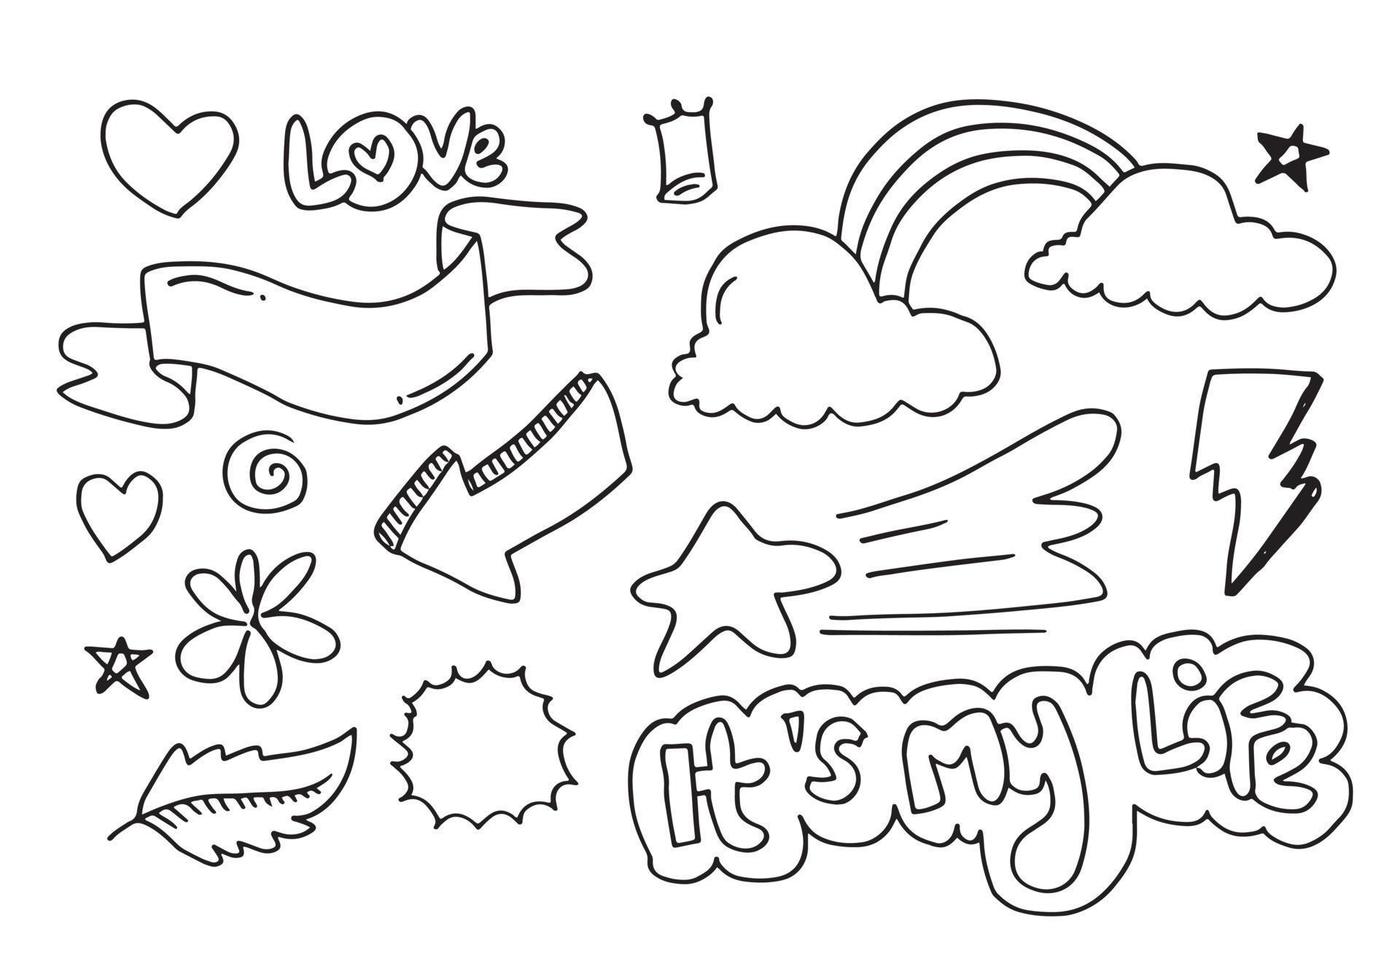 elementos de conjunto dibujados a mano, negros sobre fondo blanco. corazones, nubes, estrellas, rayos, remolinos, hojas, flores, flechas y, es mi vida, texto de amor para diseños conceptuales. vector